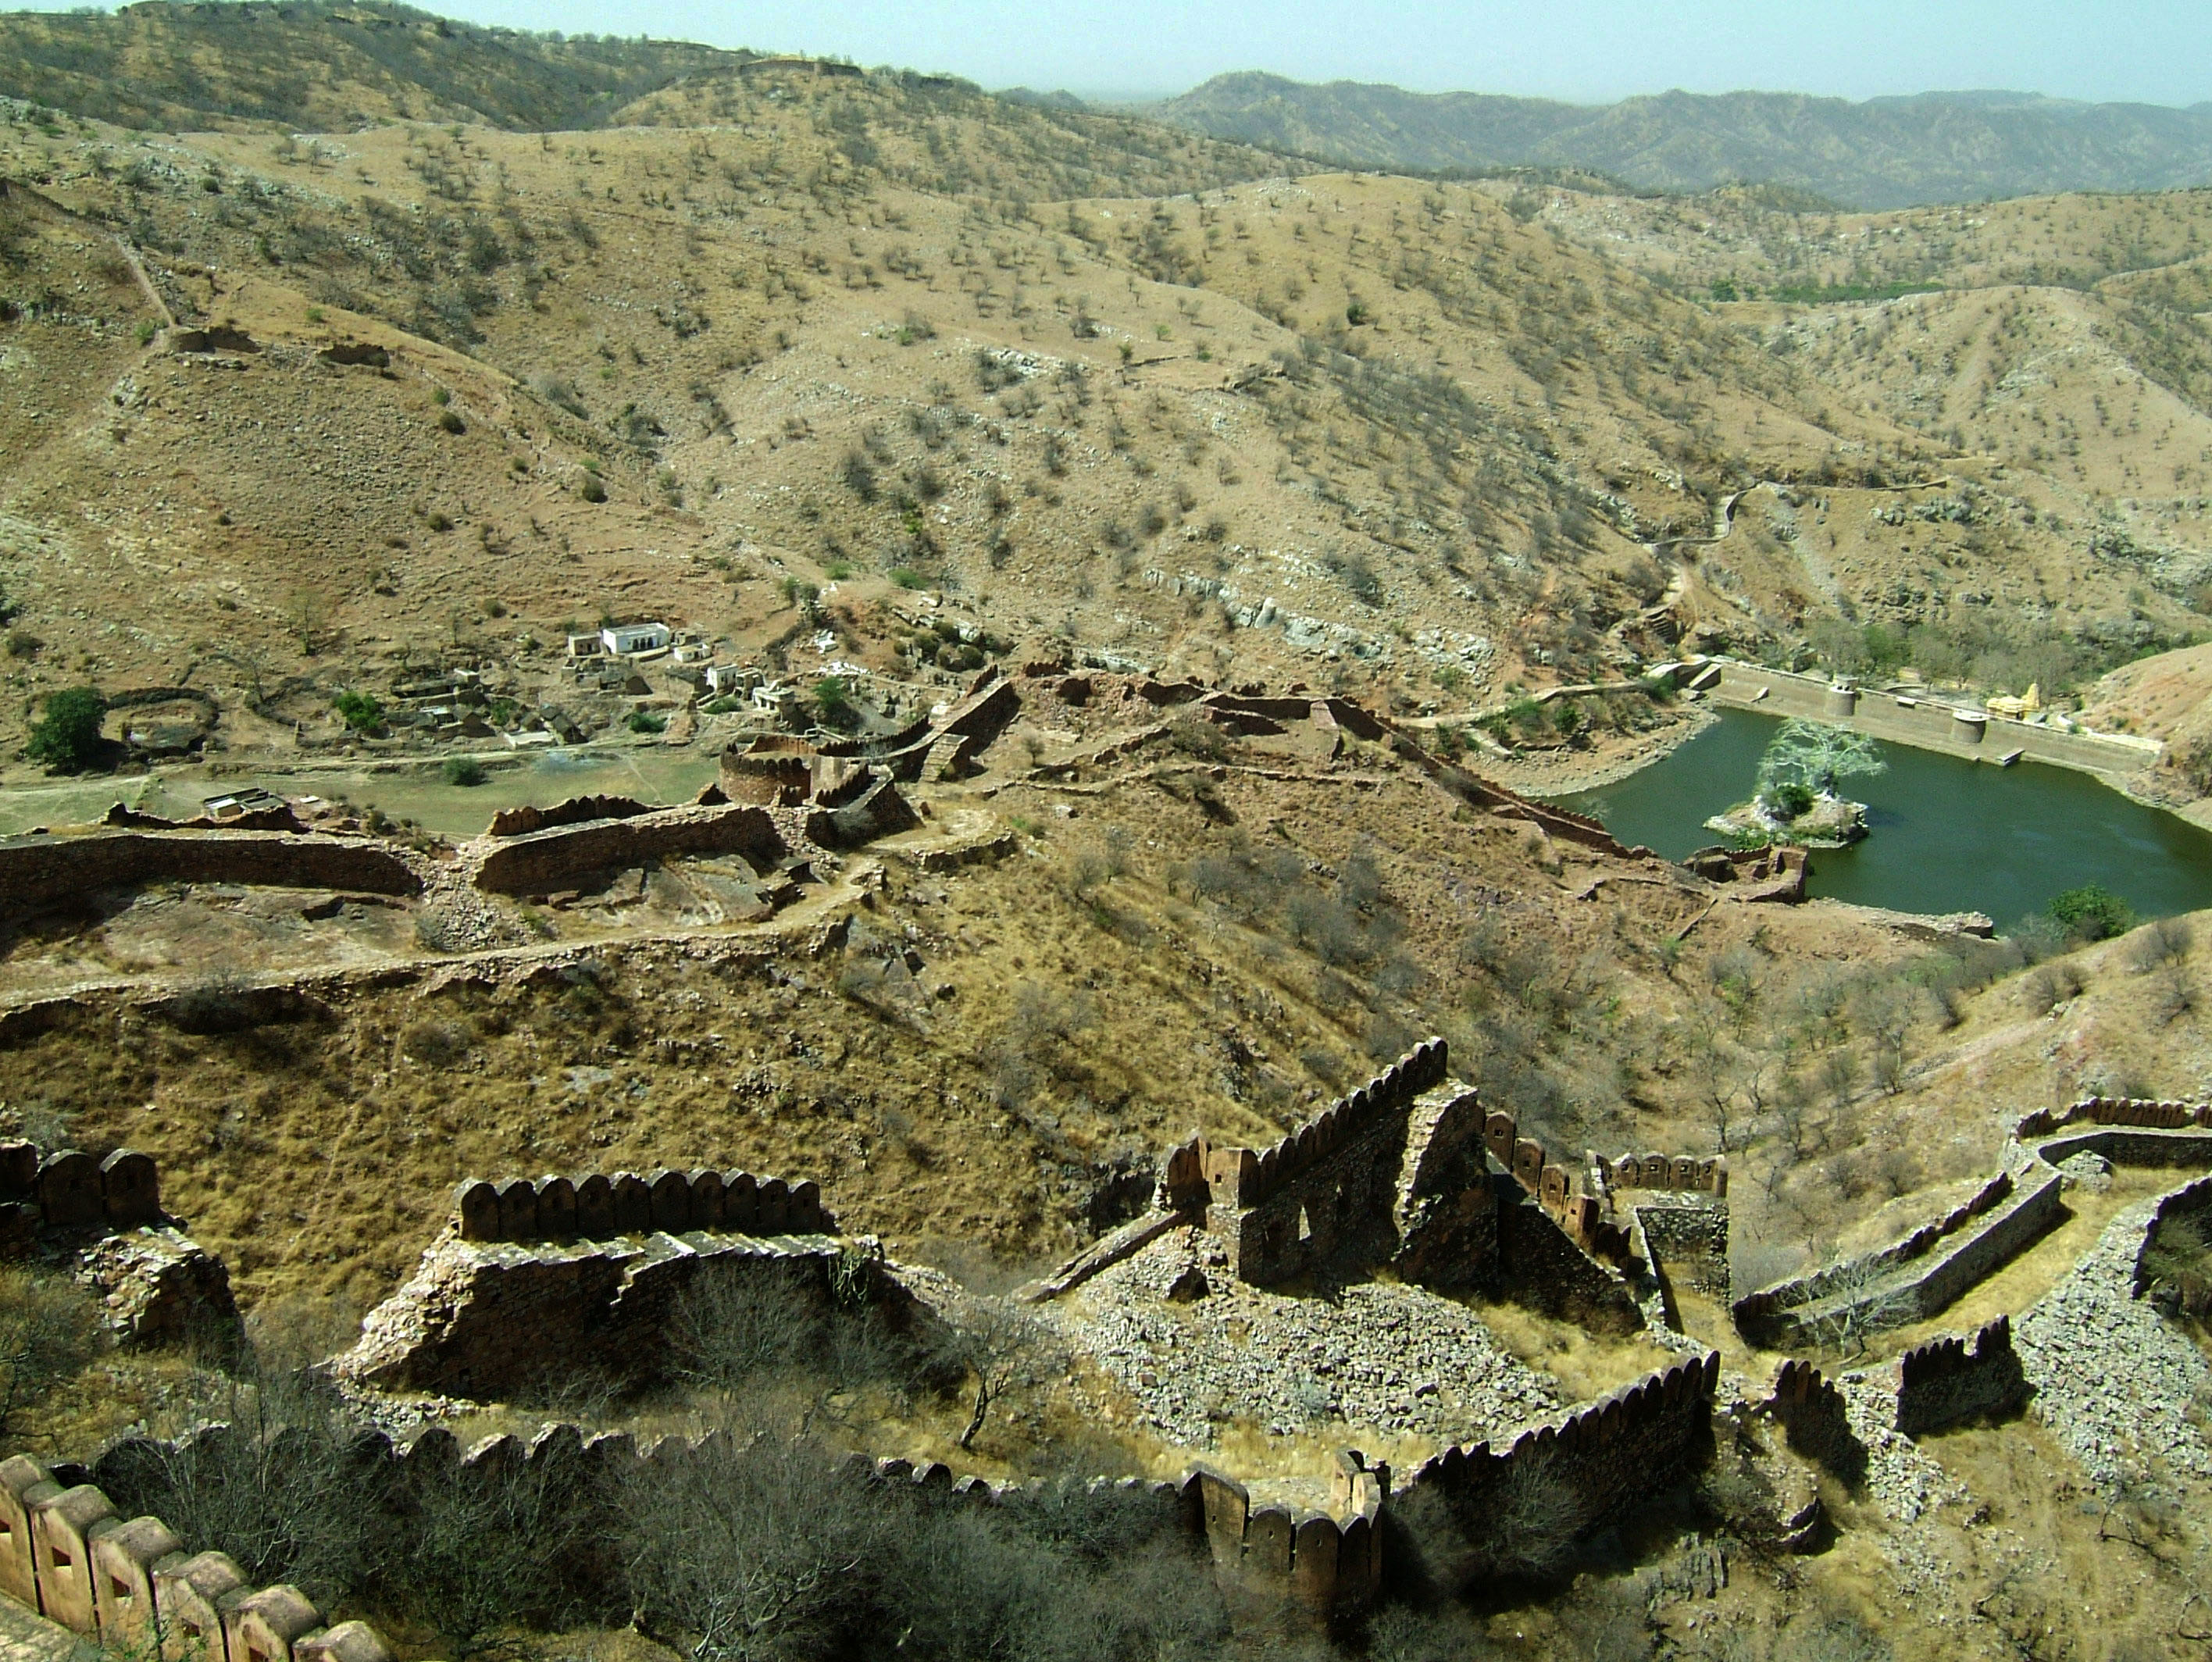 Rajasthan Jaipur Jaigarh Fort Jaivana cannon India Apr 2004 10